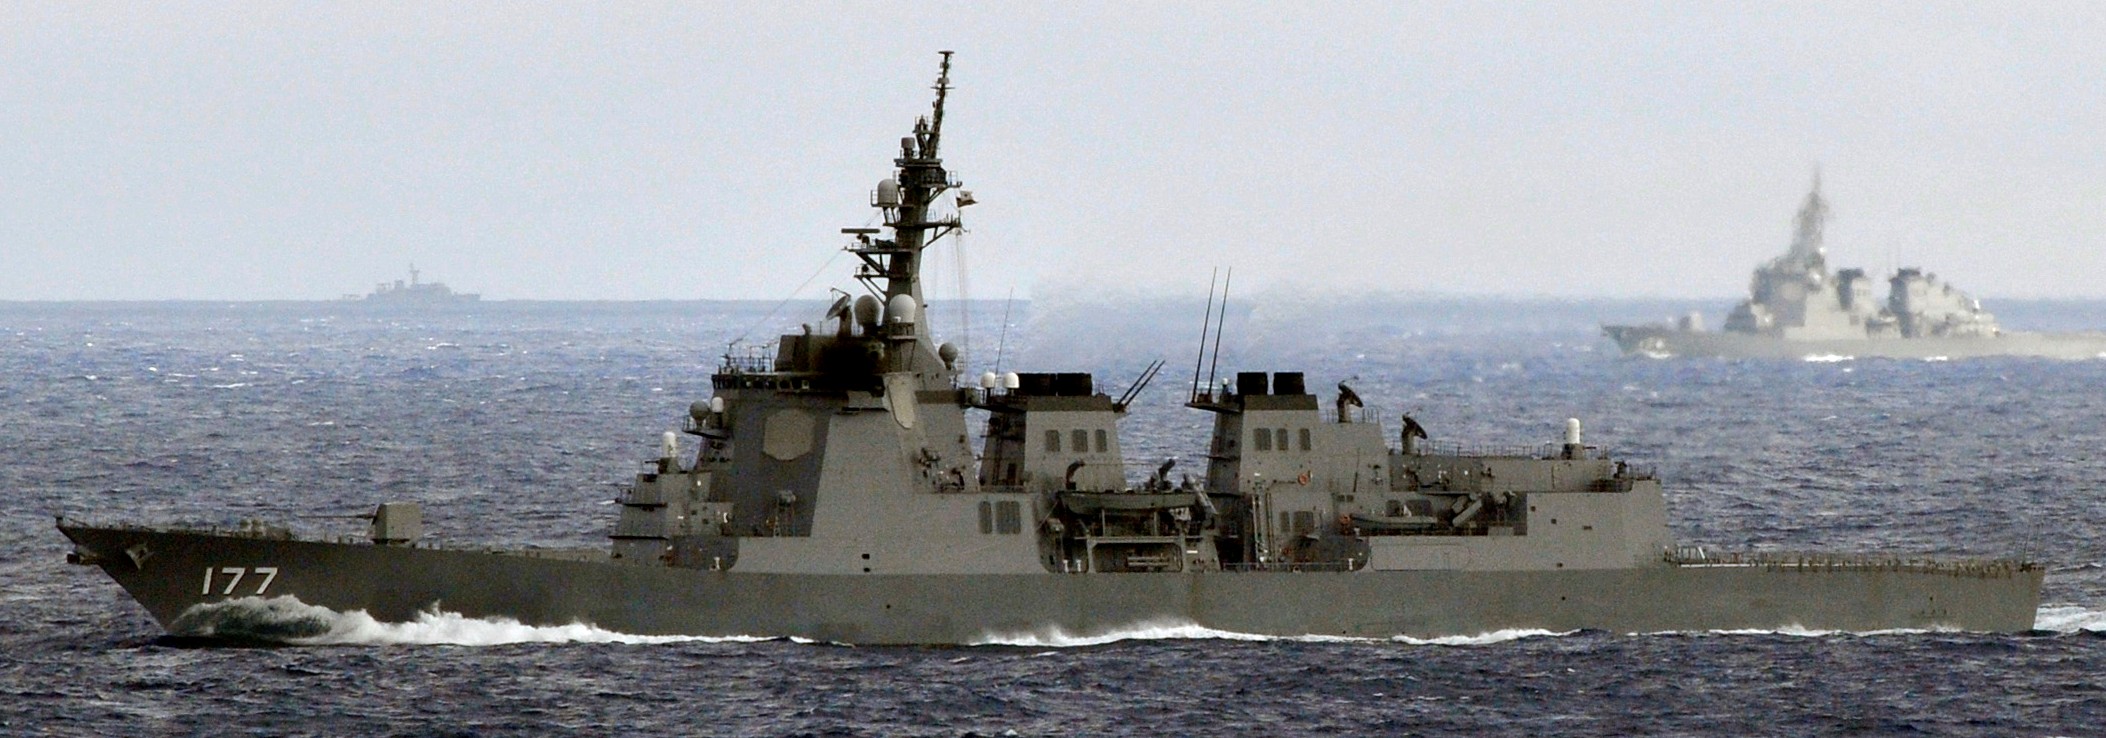 ddg-177 jds atago guided missile destroyer japan maritime self defense force jmsdf 21